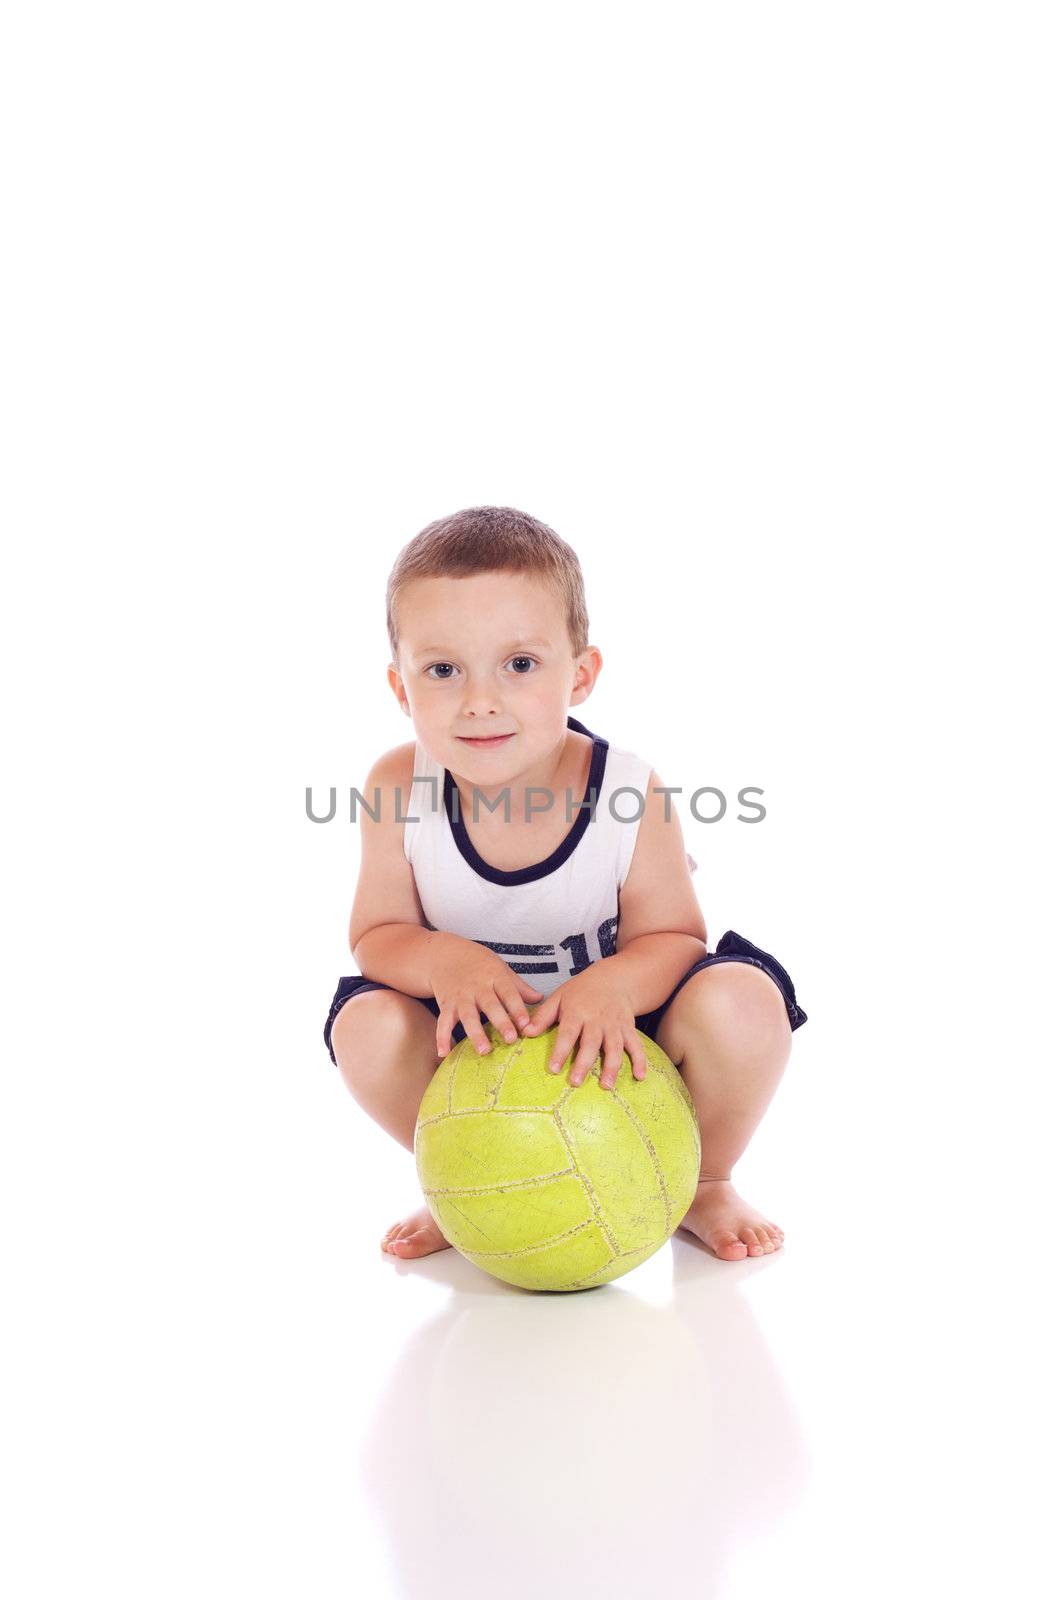 Cute little sporty boy by Talanis